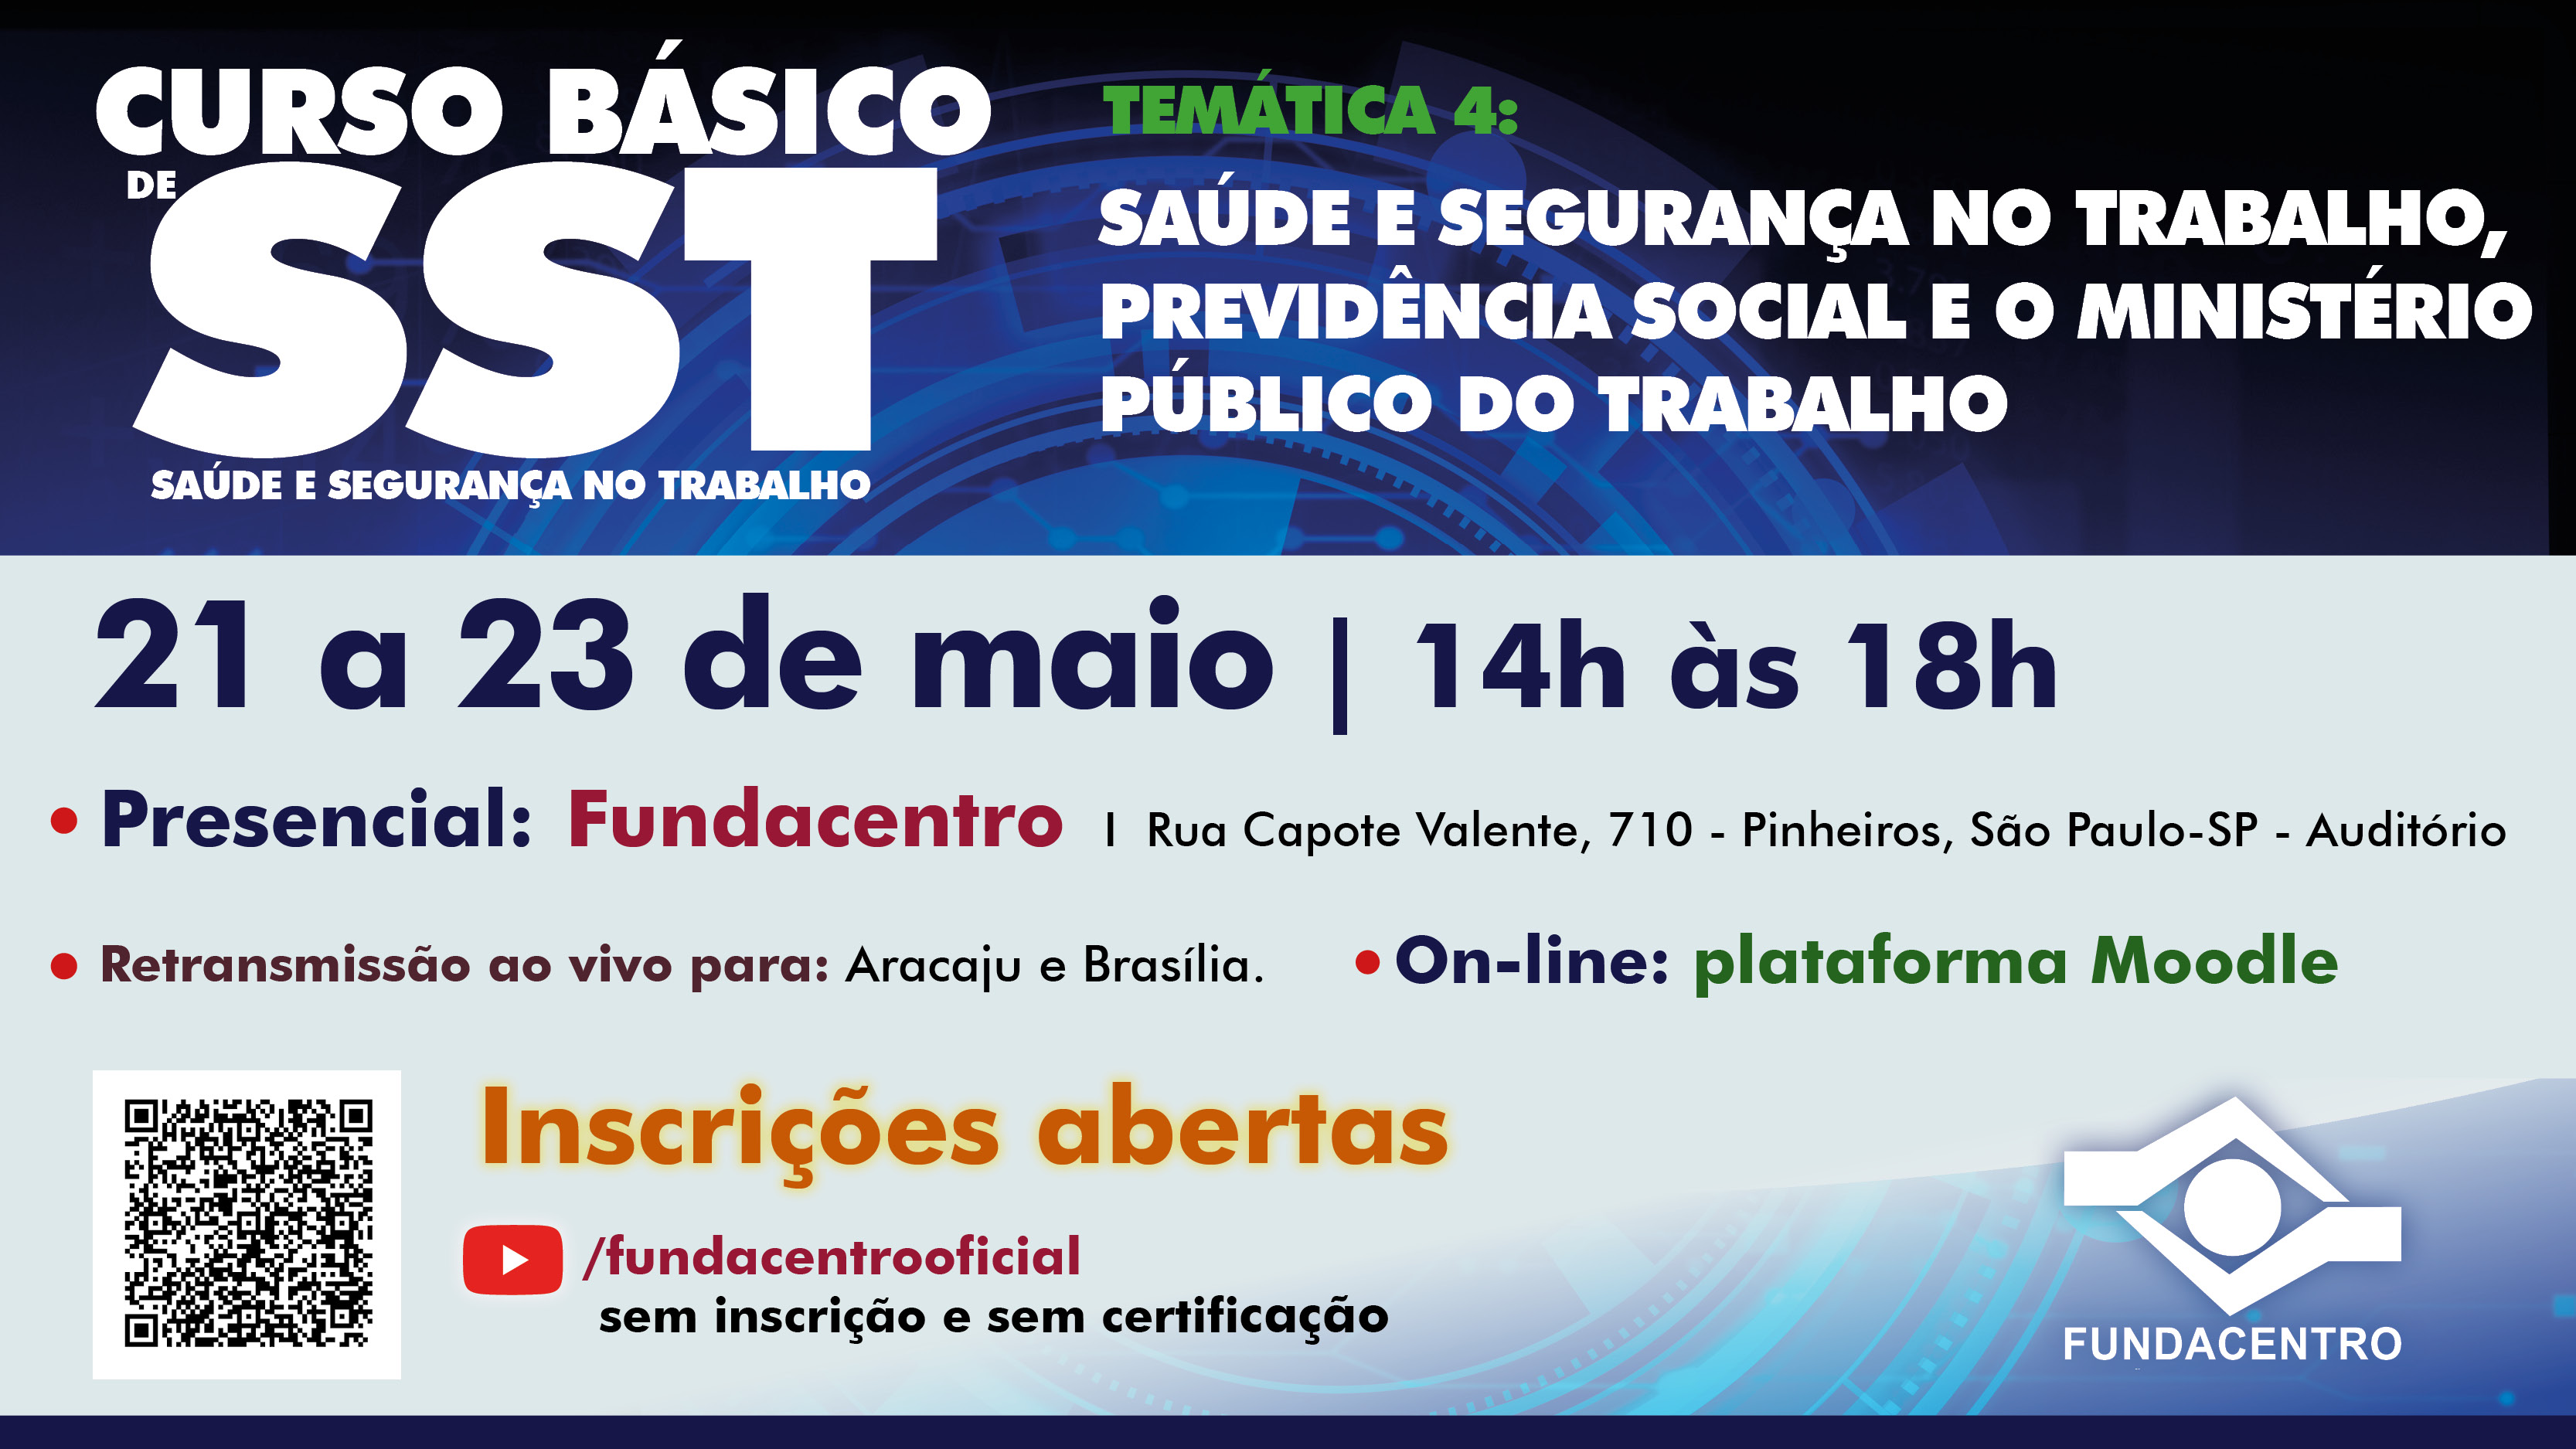 Aulas acontecem nos dias 21, 22 e 23 de maio, na modalidade presencial, on-line e serão retransmitidas para Aracaju e Brasília